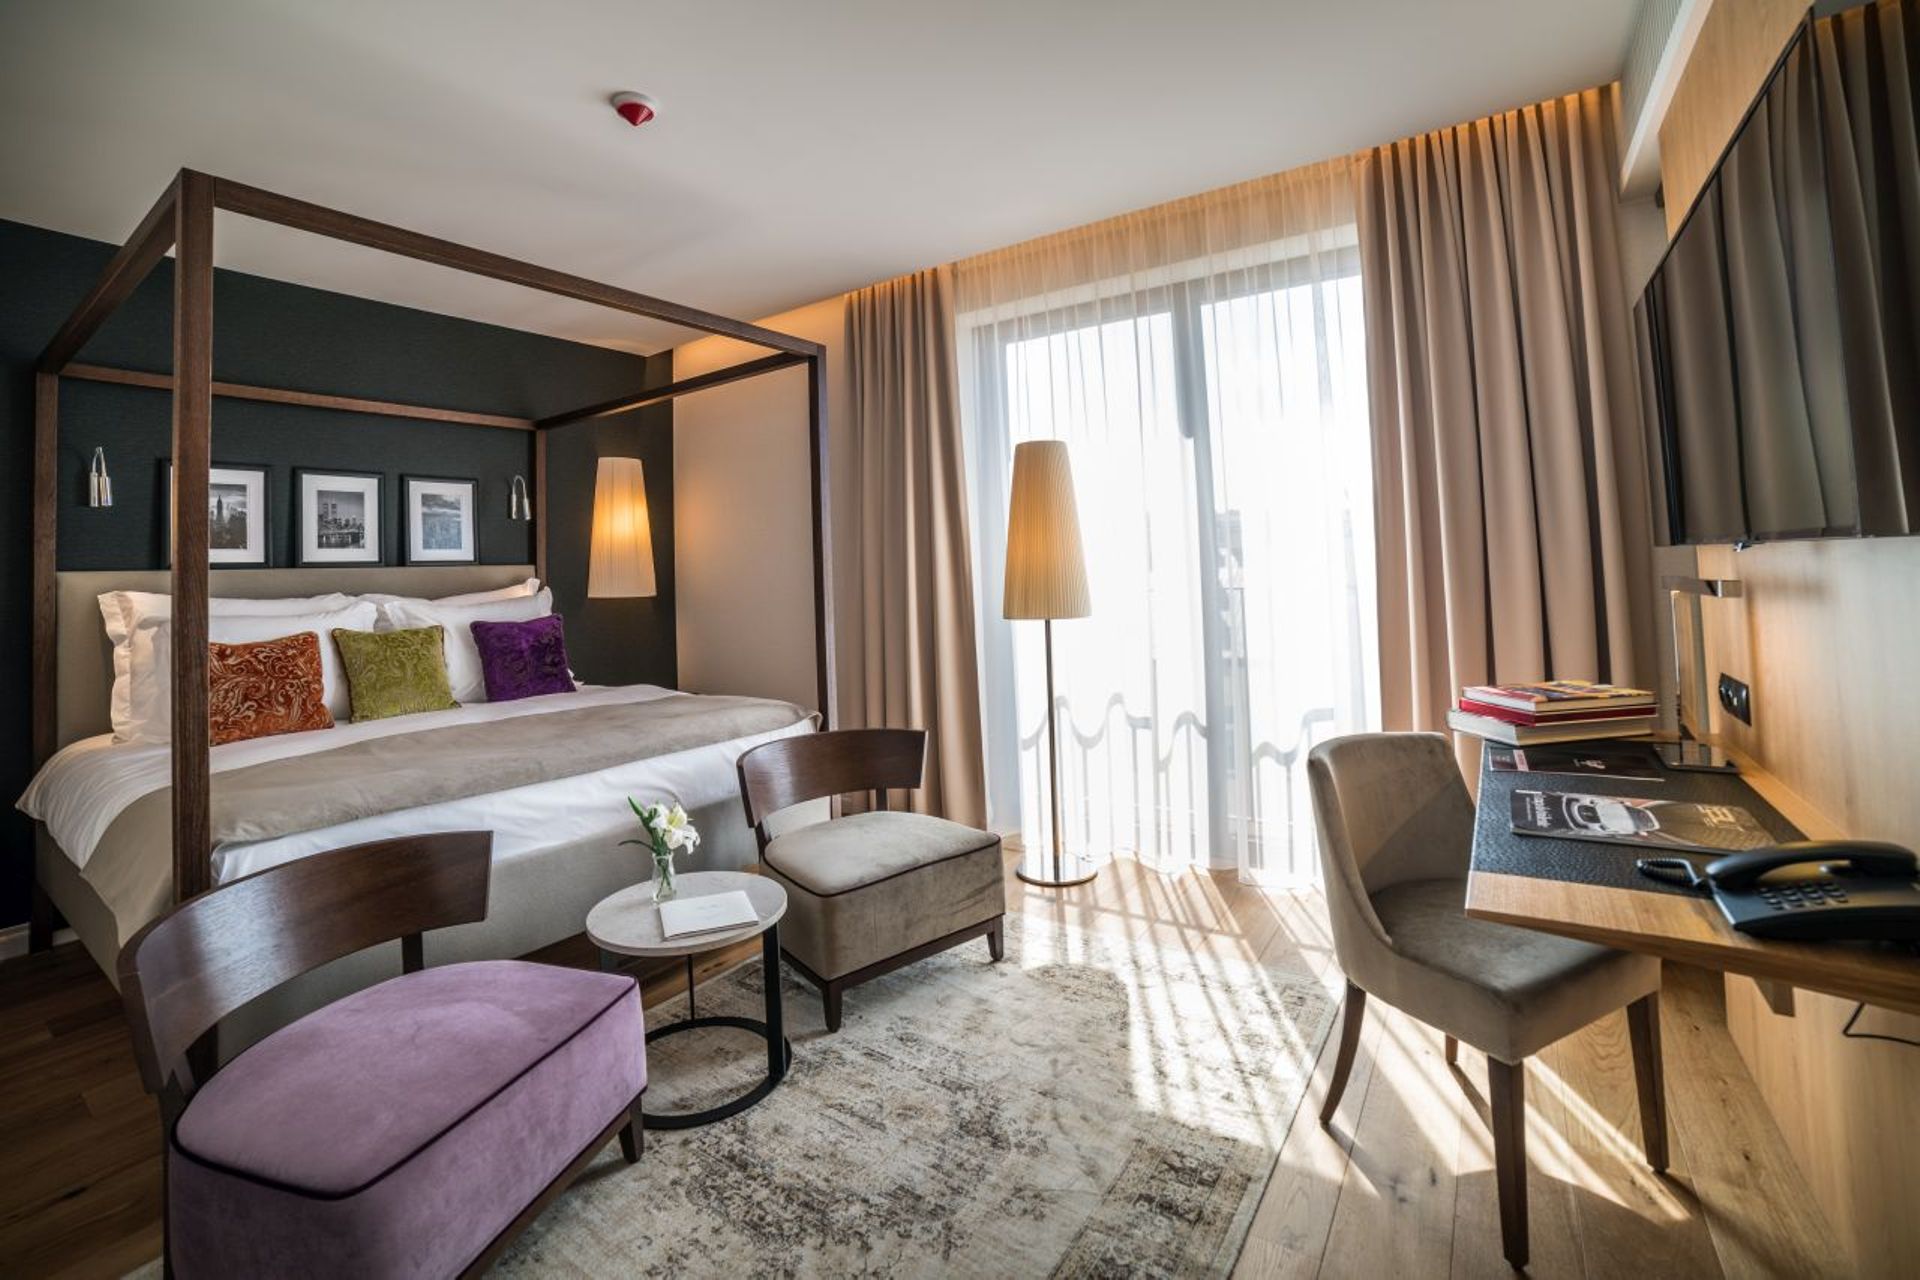  Hotel Principe w Rzeszowie dołączy do sieci Best Western Premier